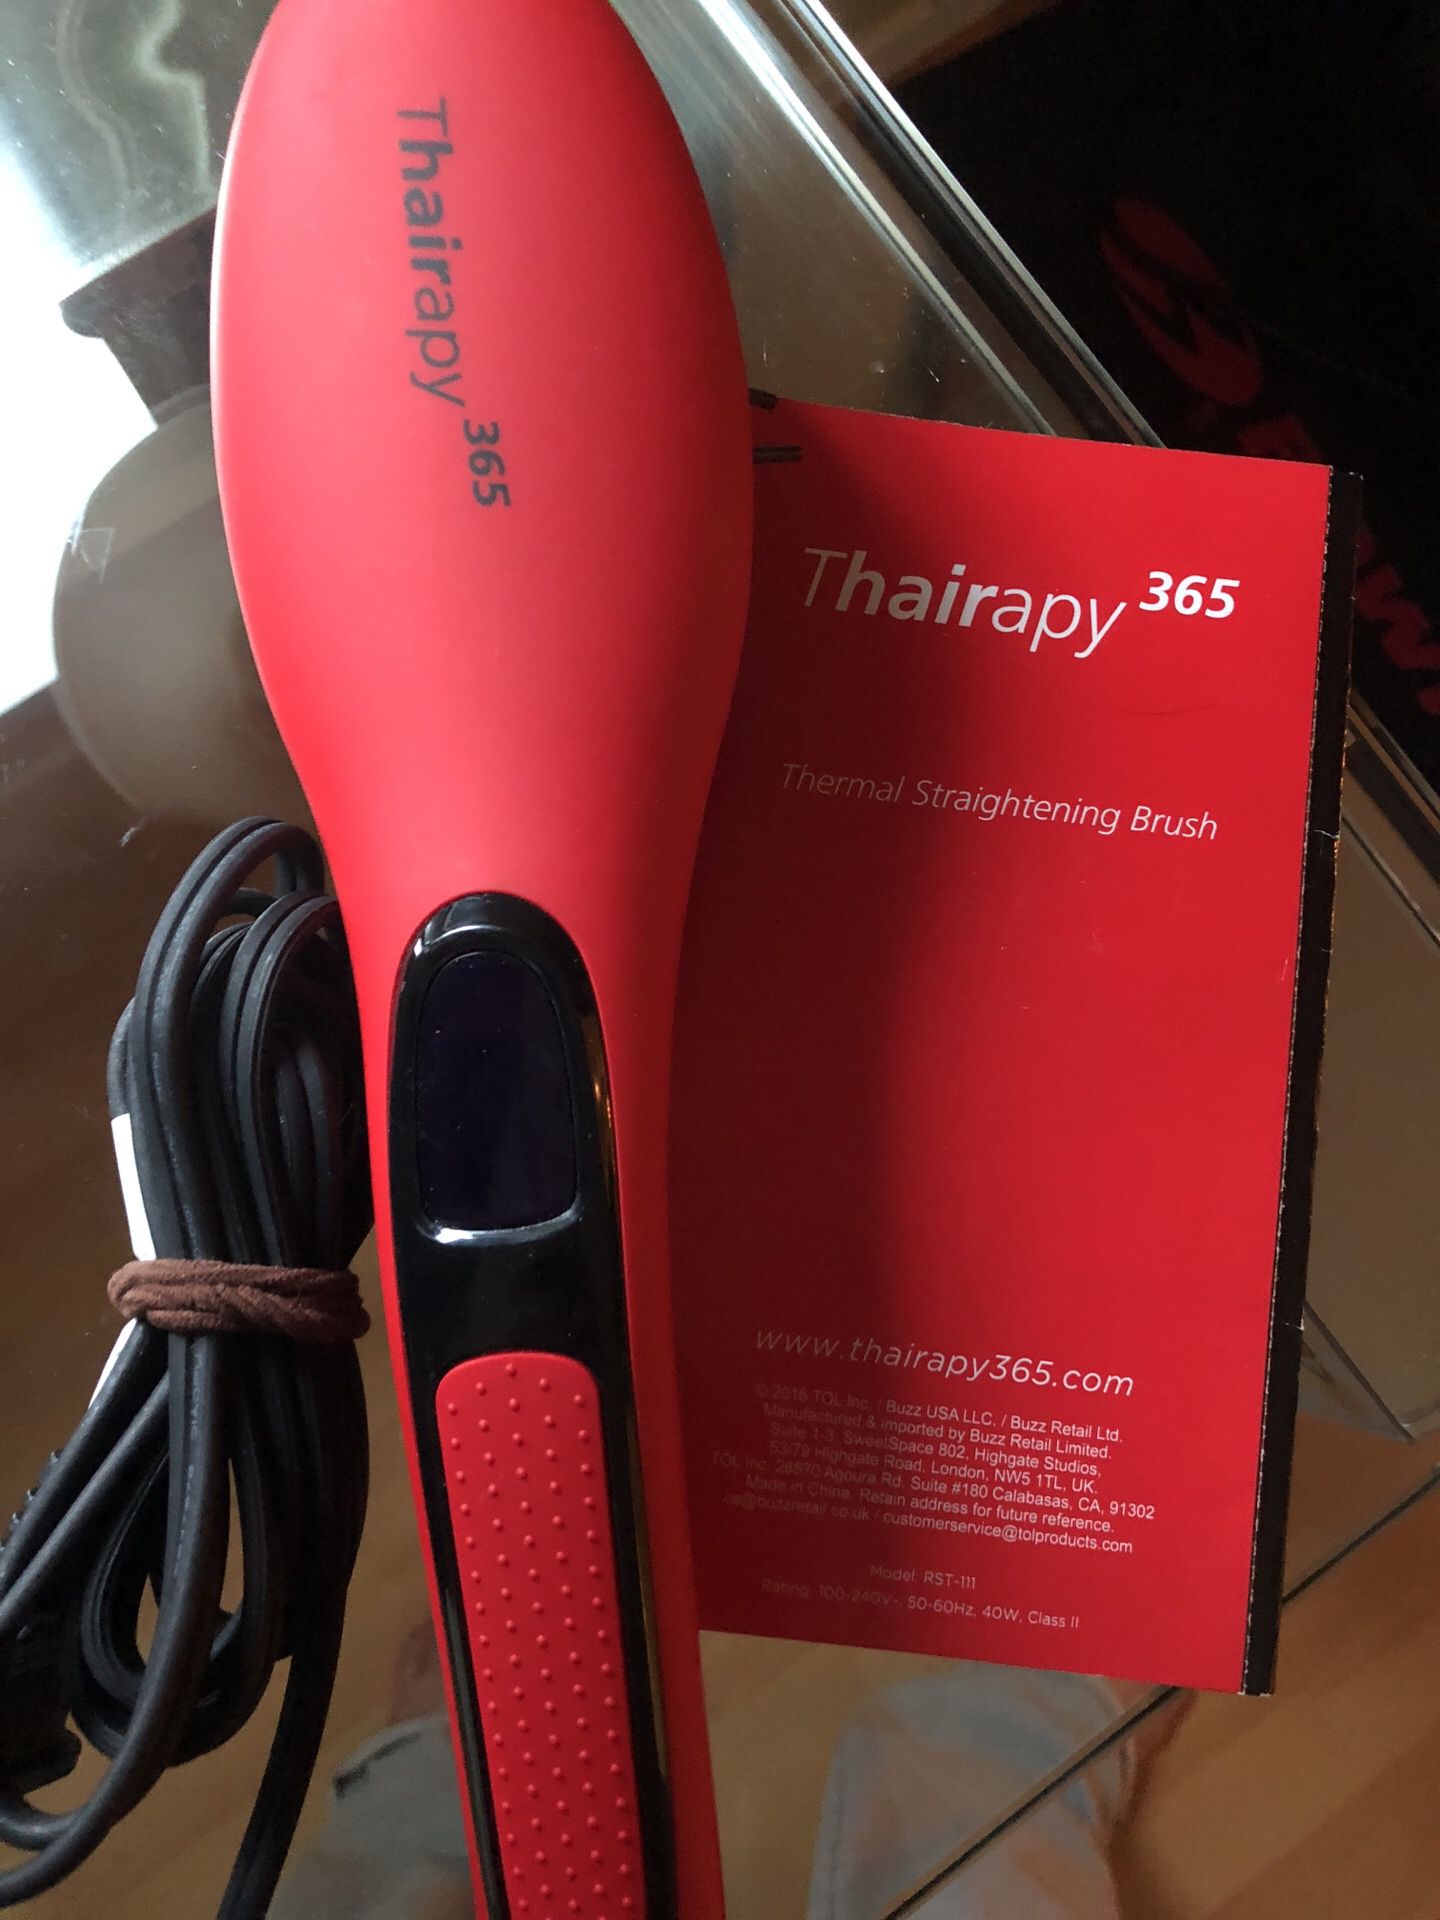 THairapy 365 thermal straightening brush